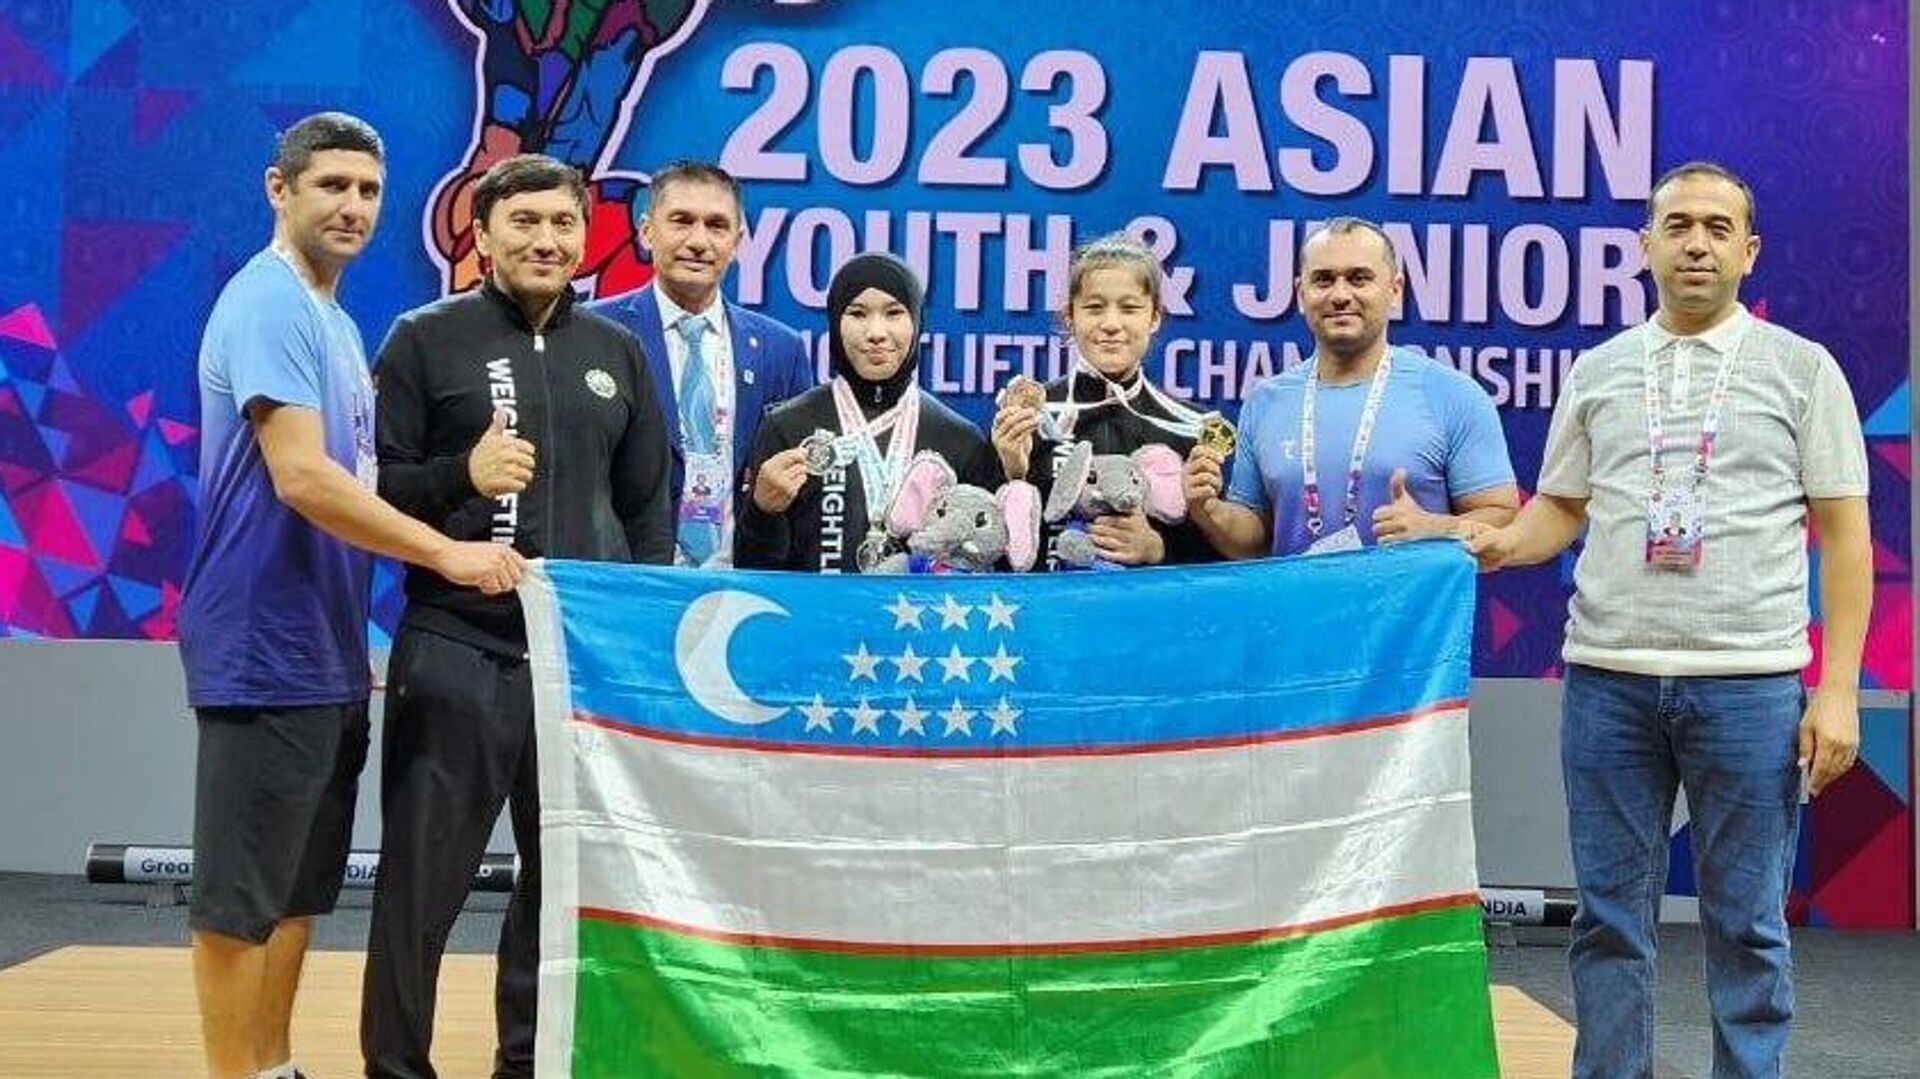 Узбекистан завоевал шесть медалей на чемпионате Азии по тяжелой атлетике - Sputnik Узбекистан, 1920, 31.07.2023